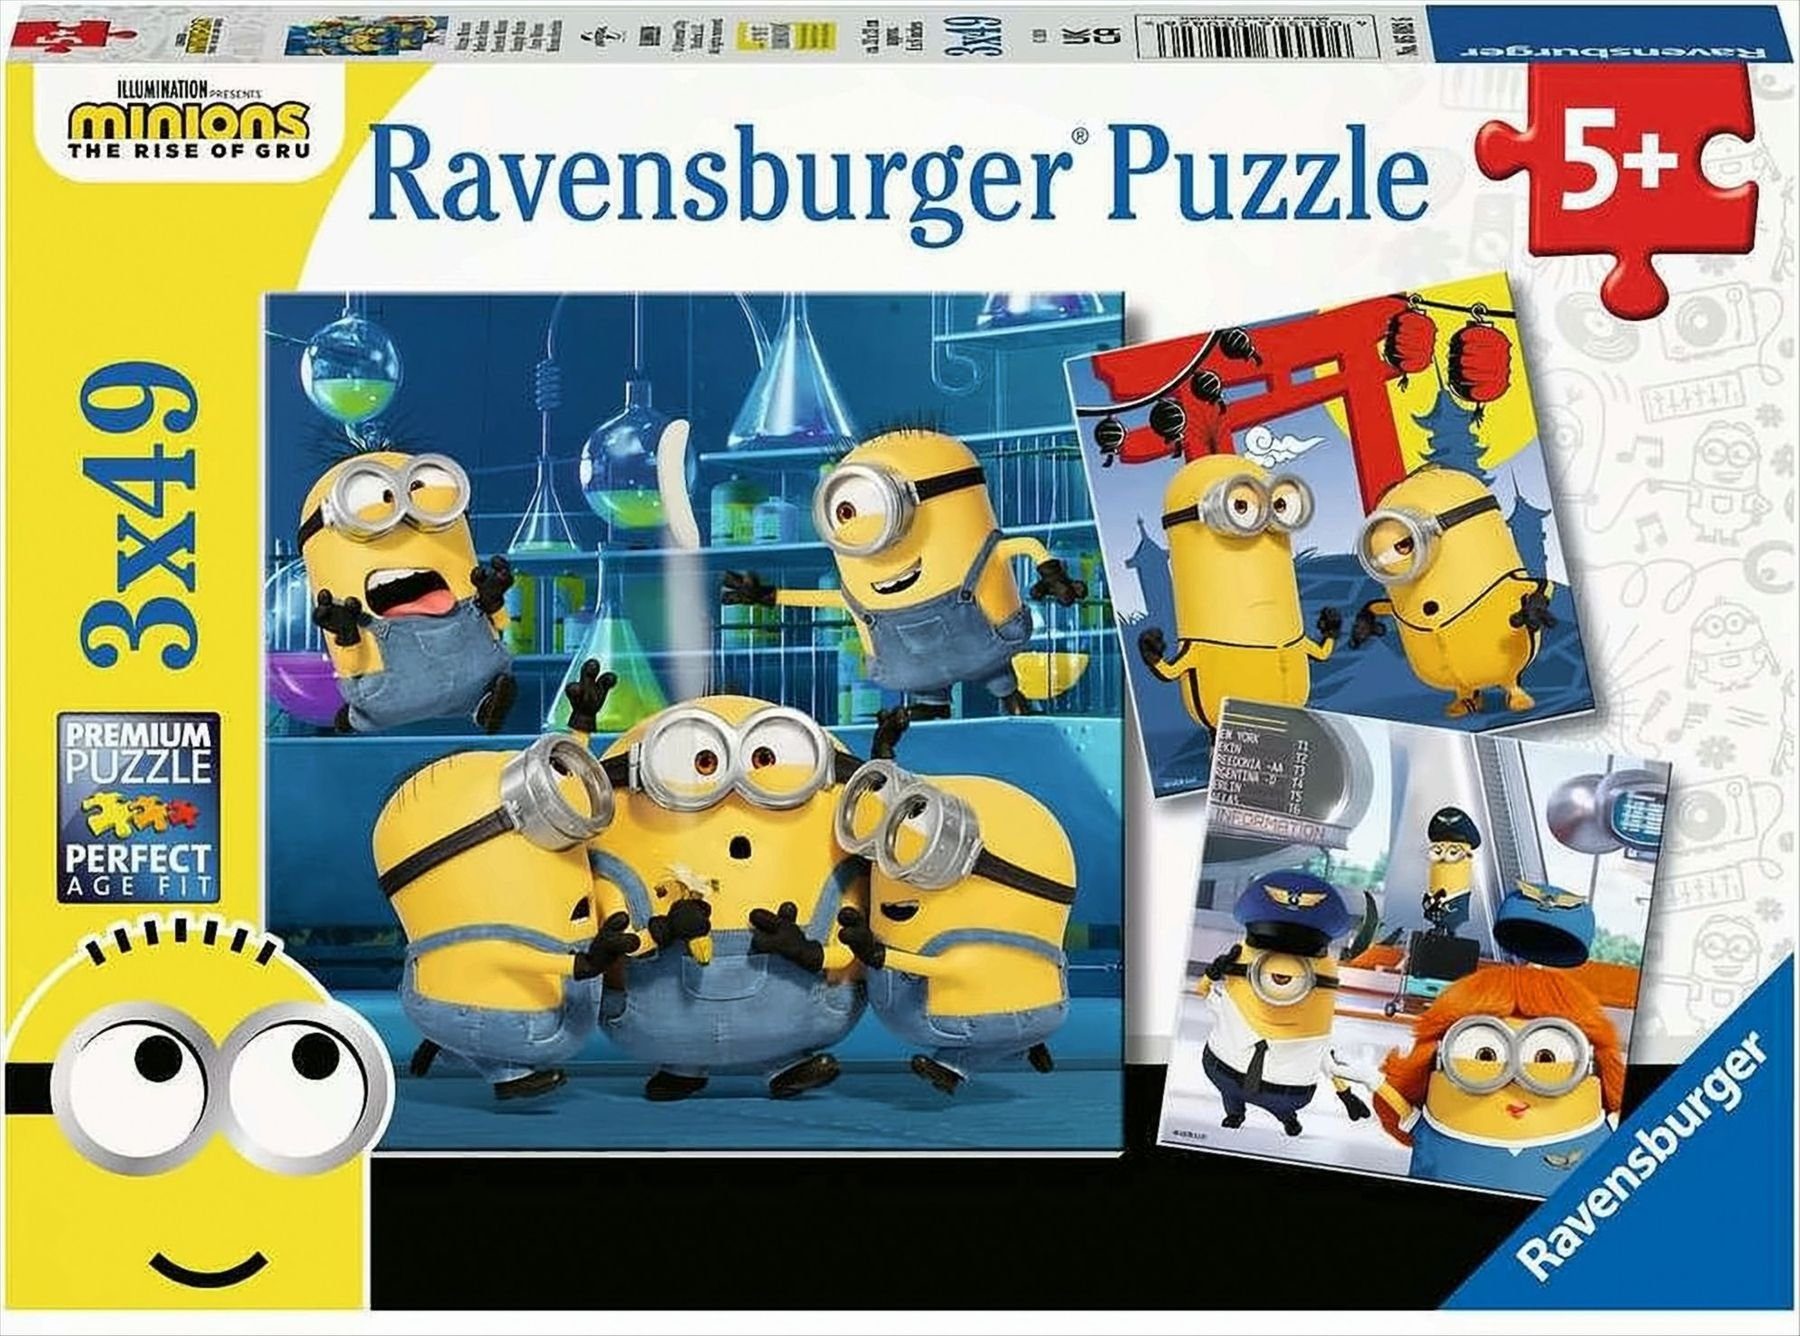 Ravensburger Puzzle Ravensburger - Witzige Minions, 3 x 49 Teile, Puzzleteile